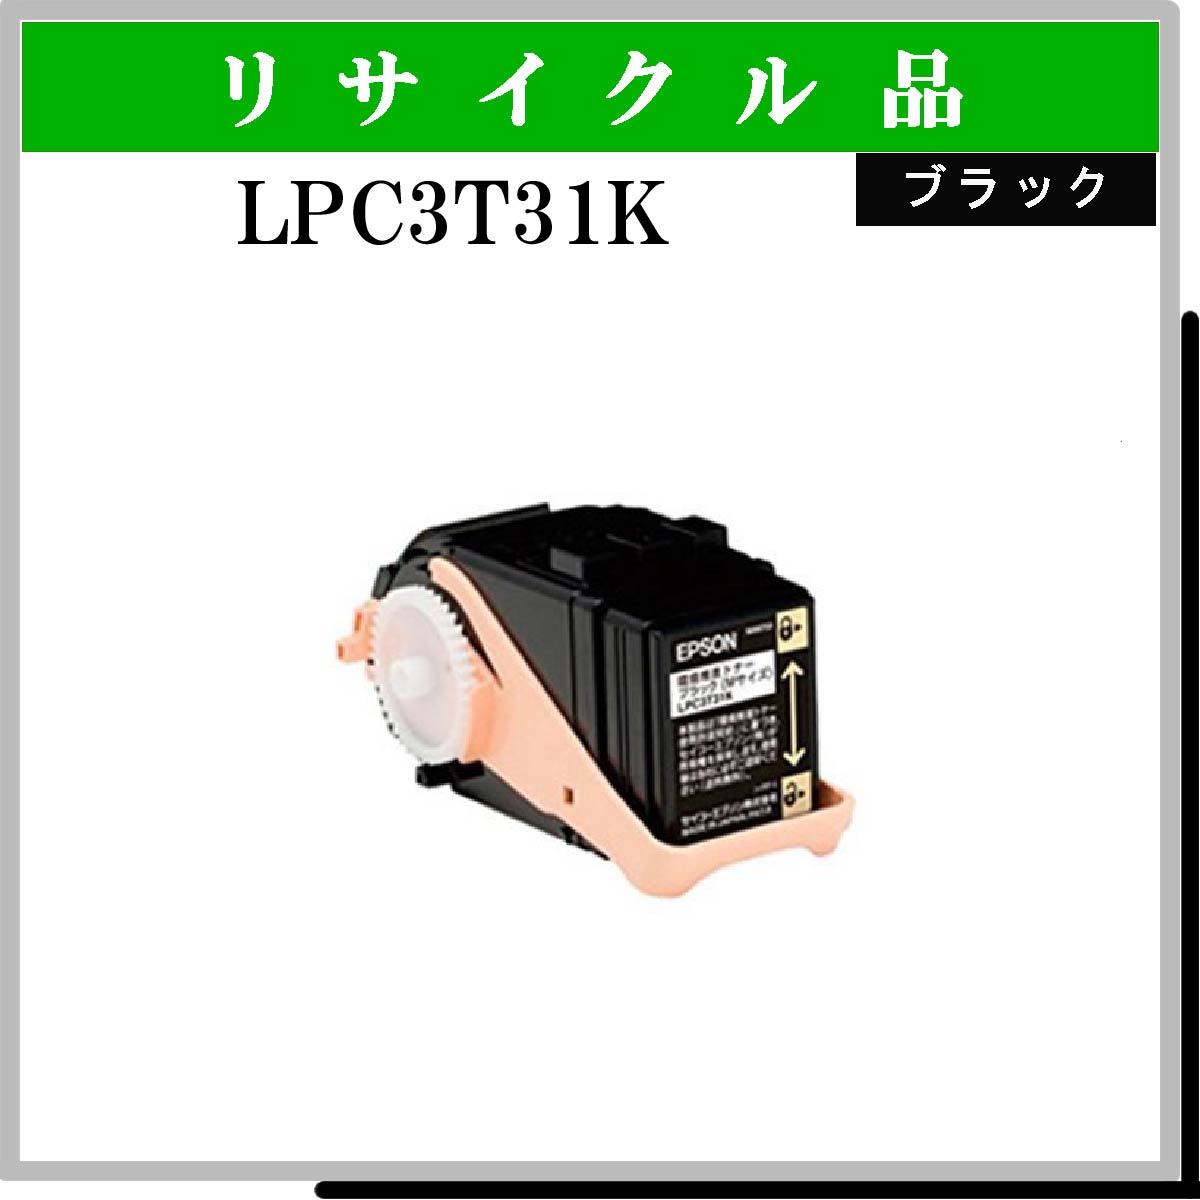 LPC3T31K